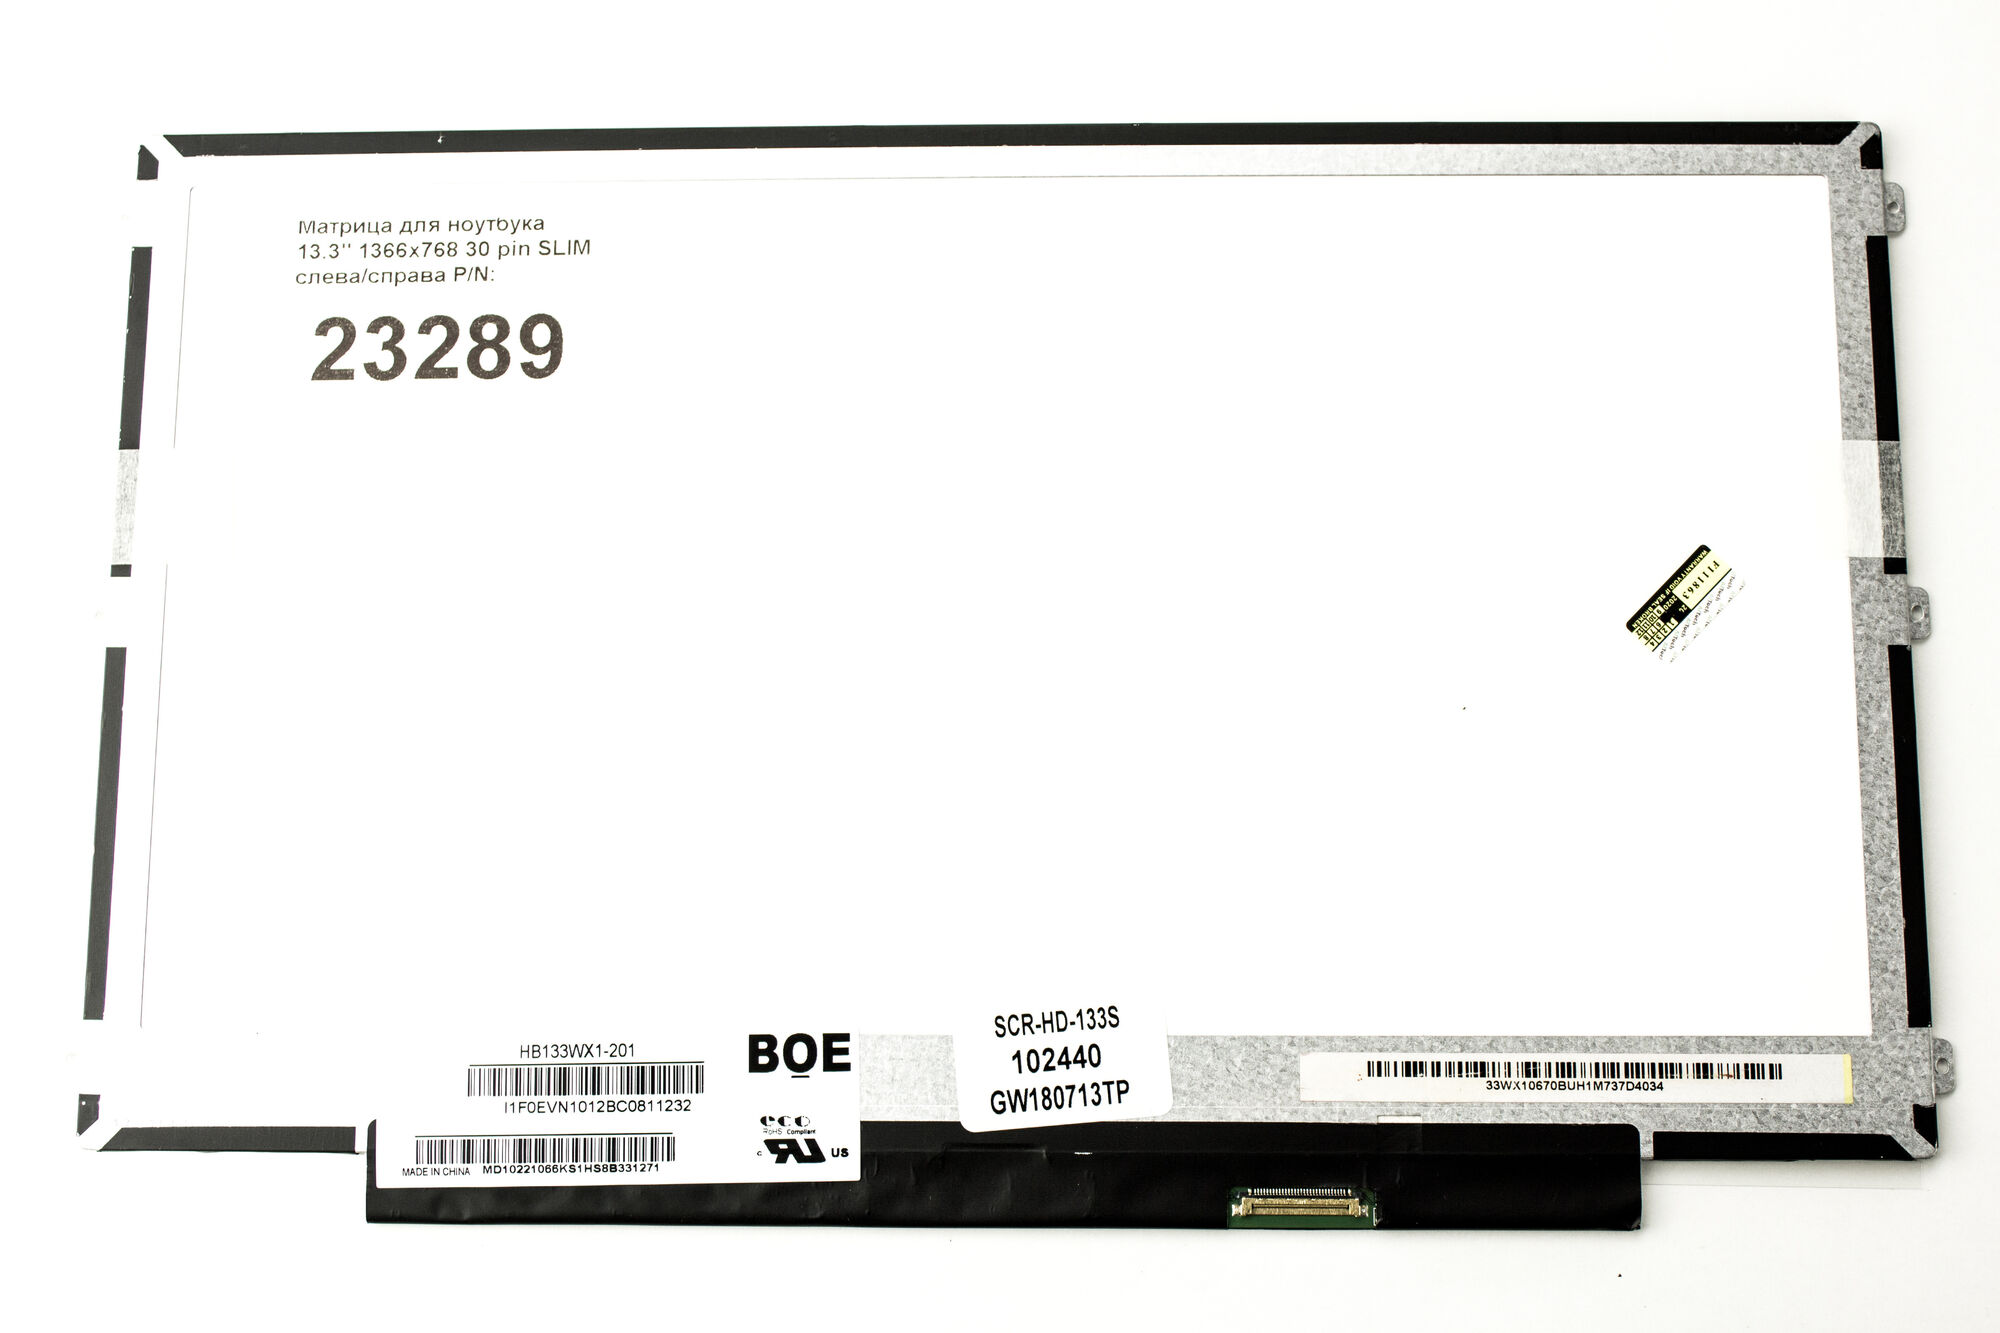 Матрица для ноутбука 13.3 1366x768 30 pin SLIM слева/справа HB133WX1-201